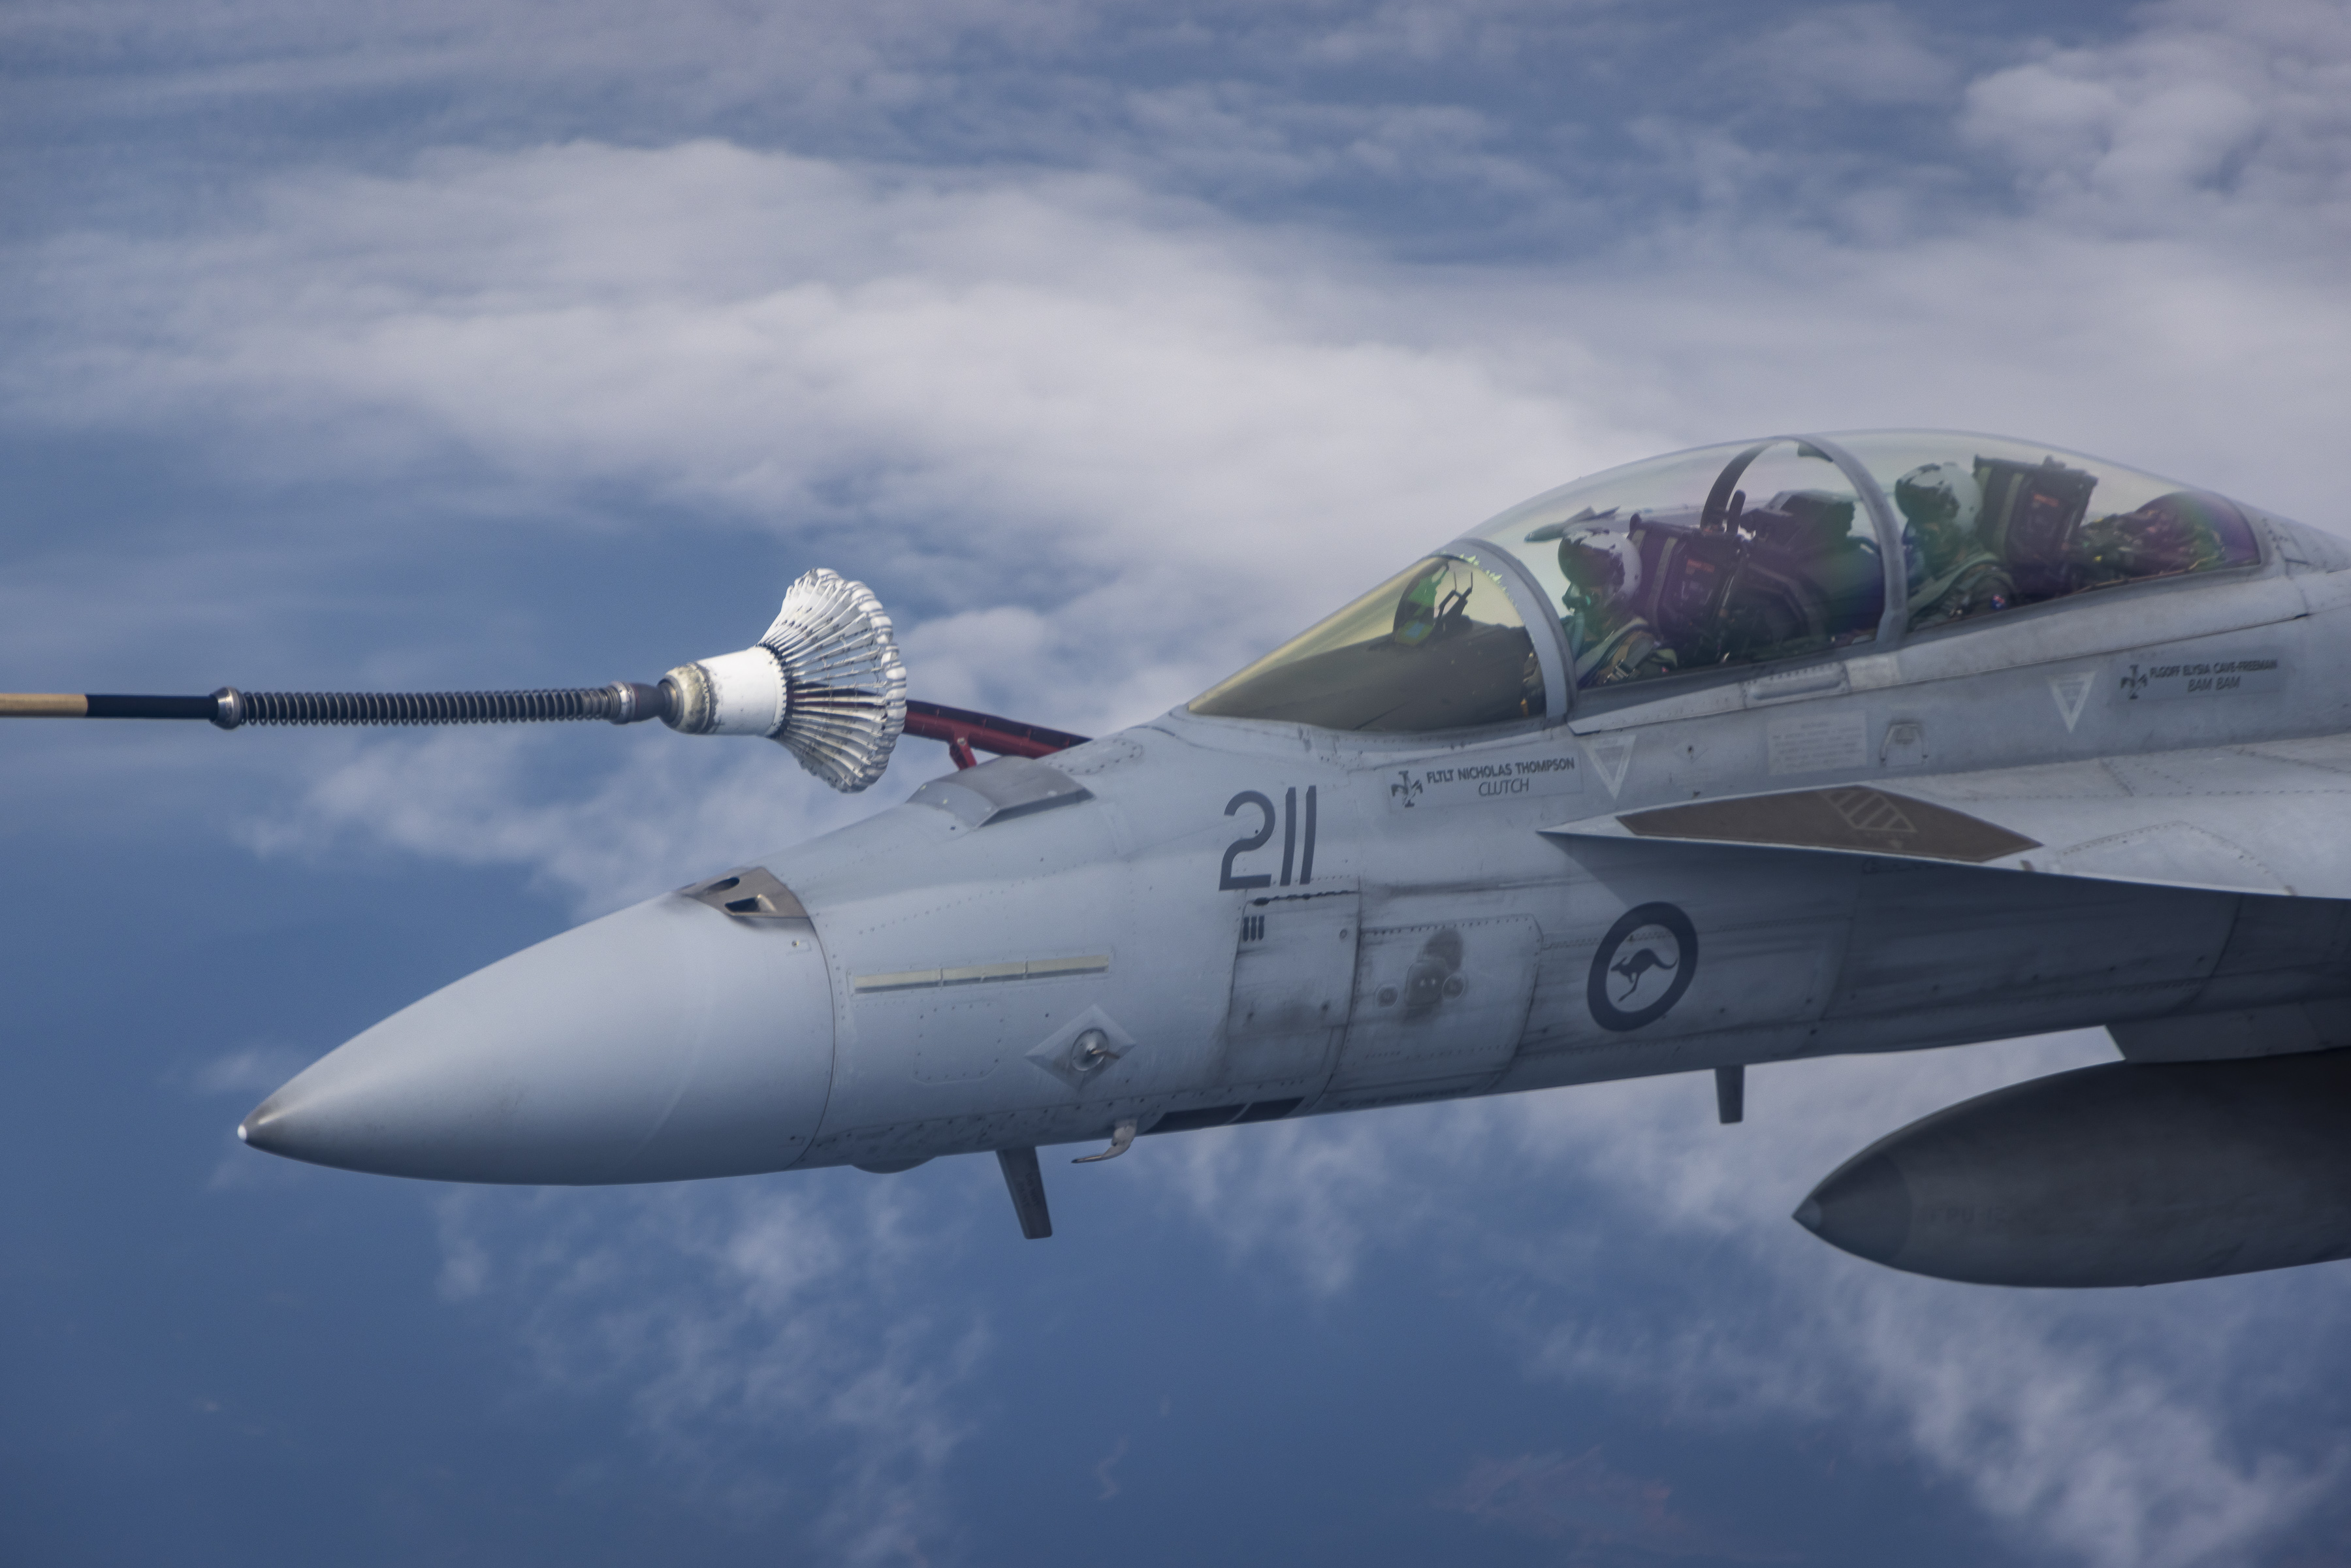 Australian aircraft receiving fuel midair